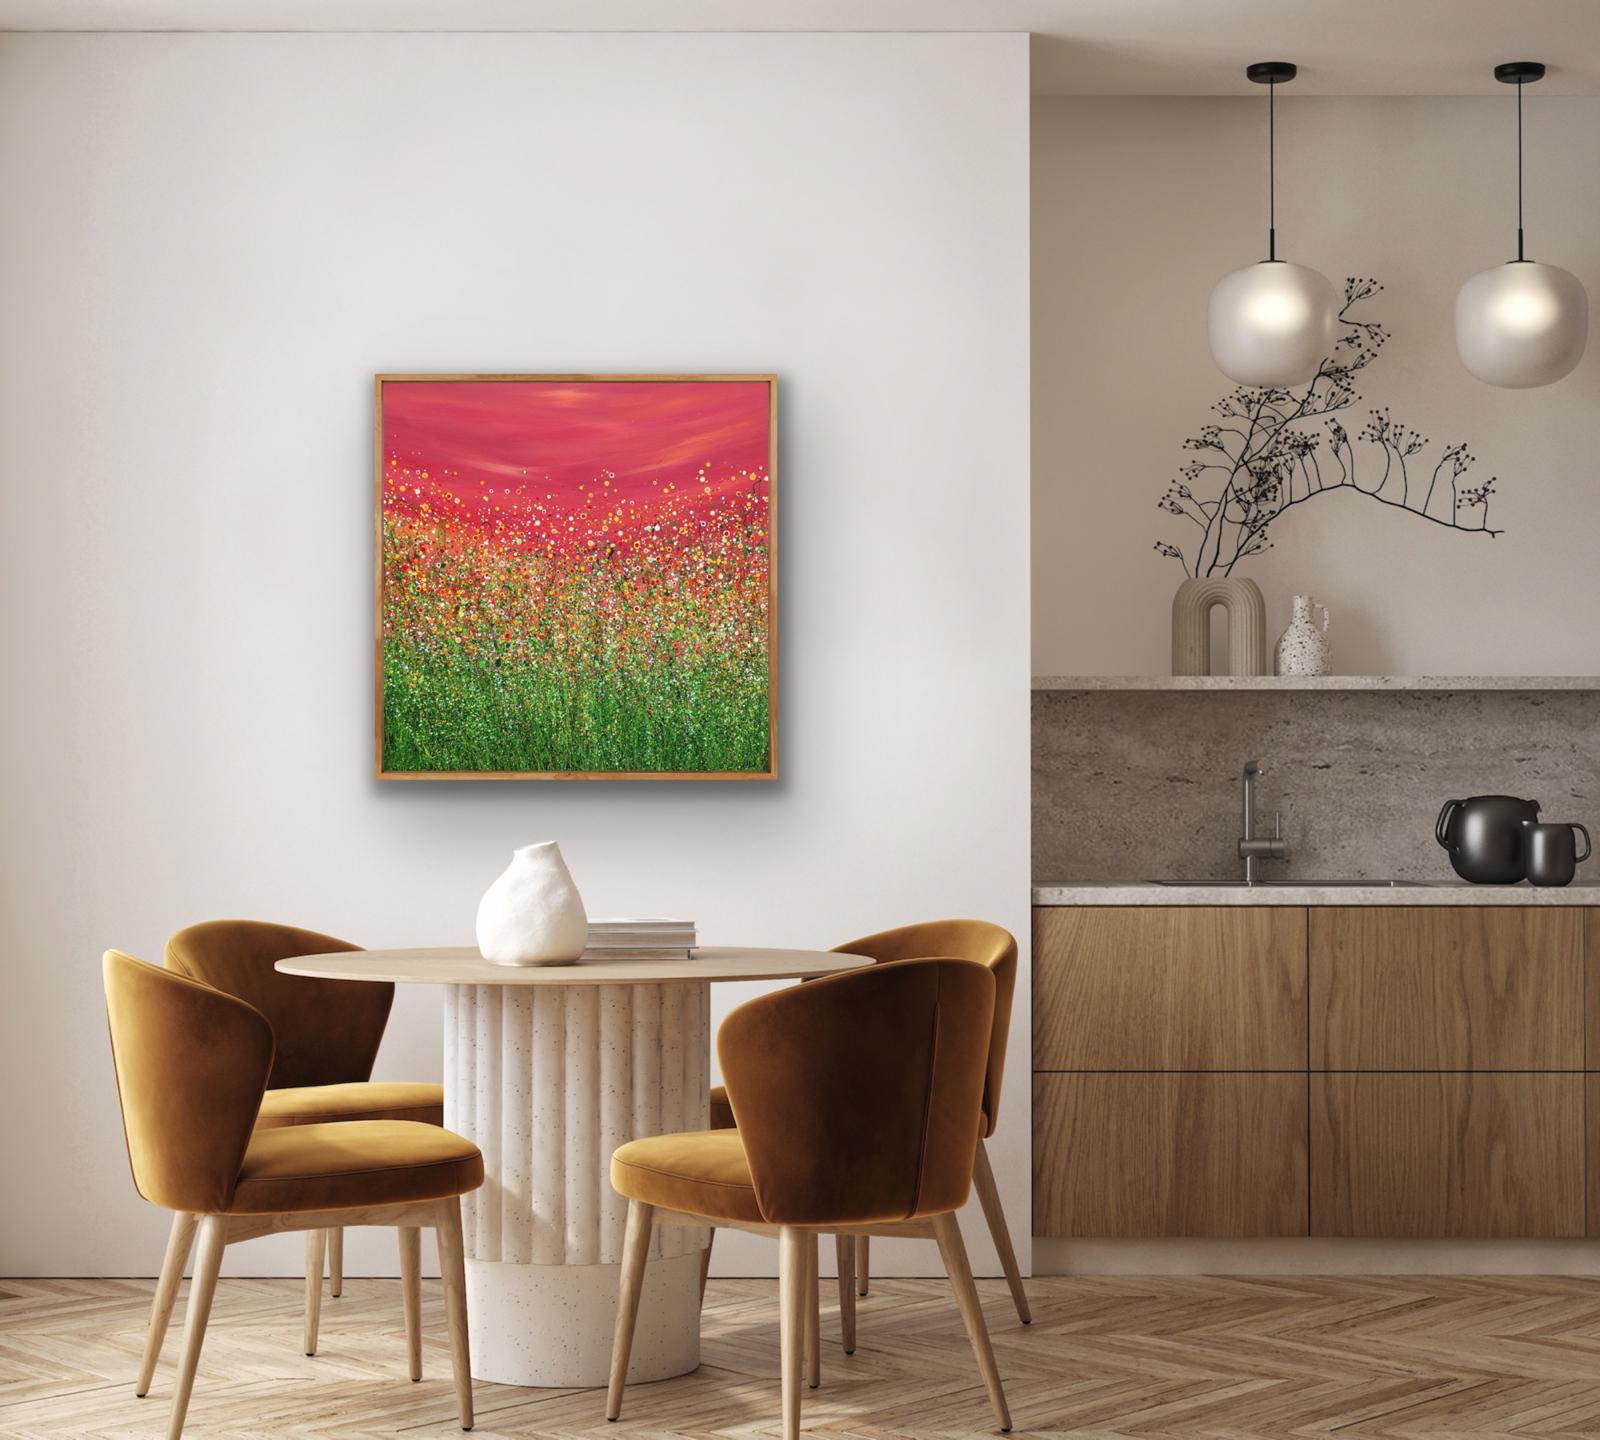 Popping Red Sky Meadows - Une peinture originale semi-abstraite de Lucy Moore. En utilisant sa technique caractéristique de l'herbe filée et une palette colorée, Lucy a créé une touche semi-abstraite à ses peintures classiques de prairies. Cette